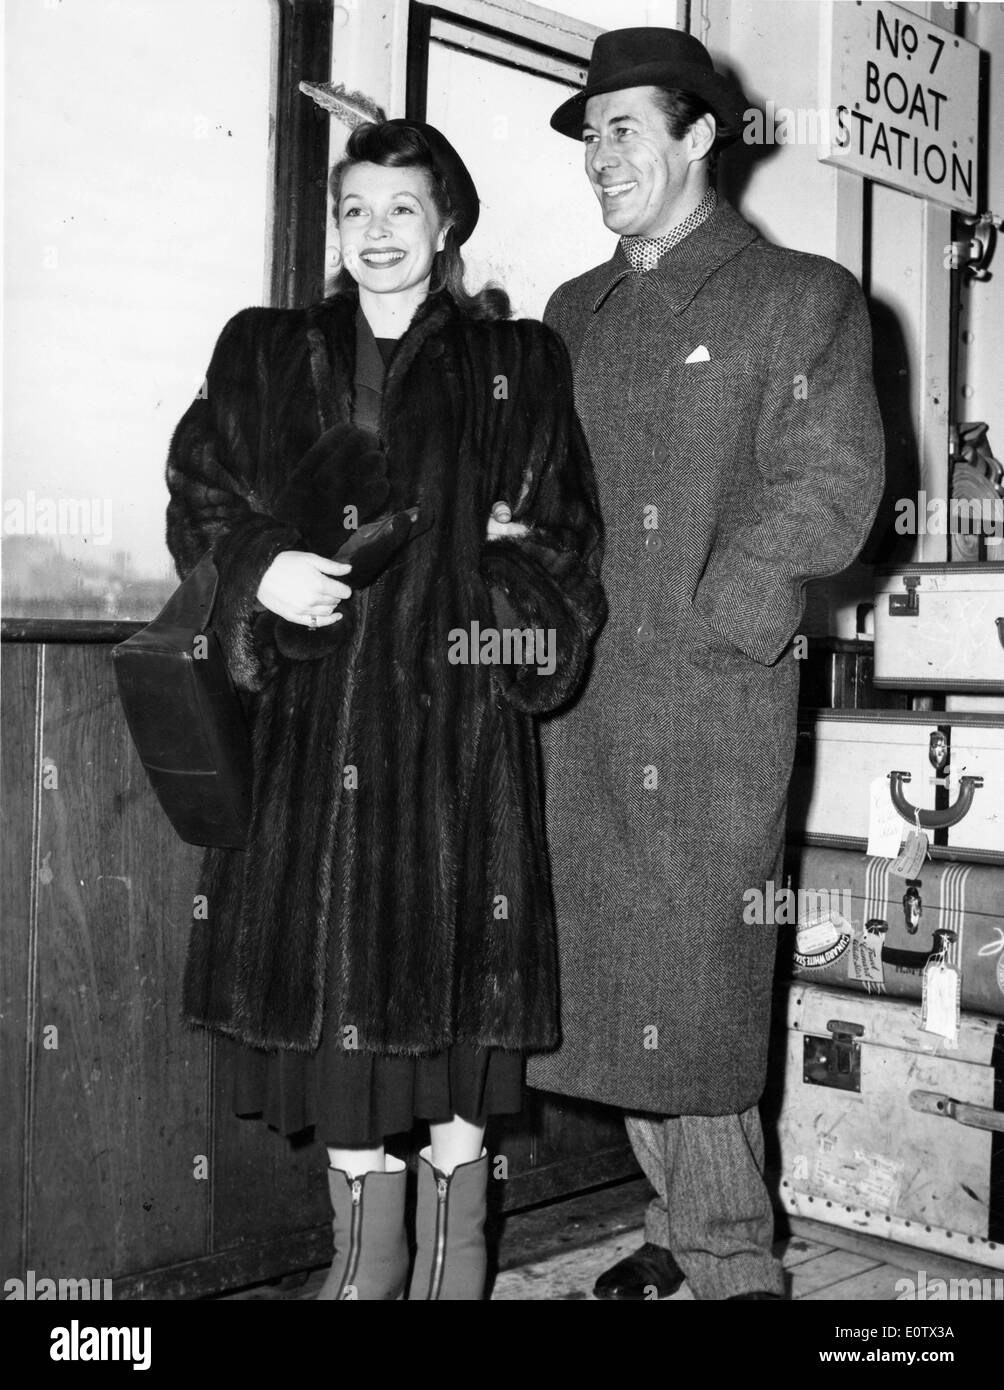 Attori Rex Harrison e Lilli Palmer in vacanza Foto Stock